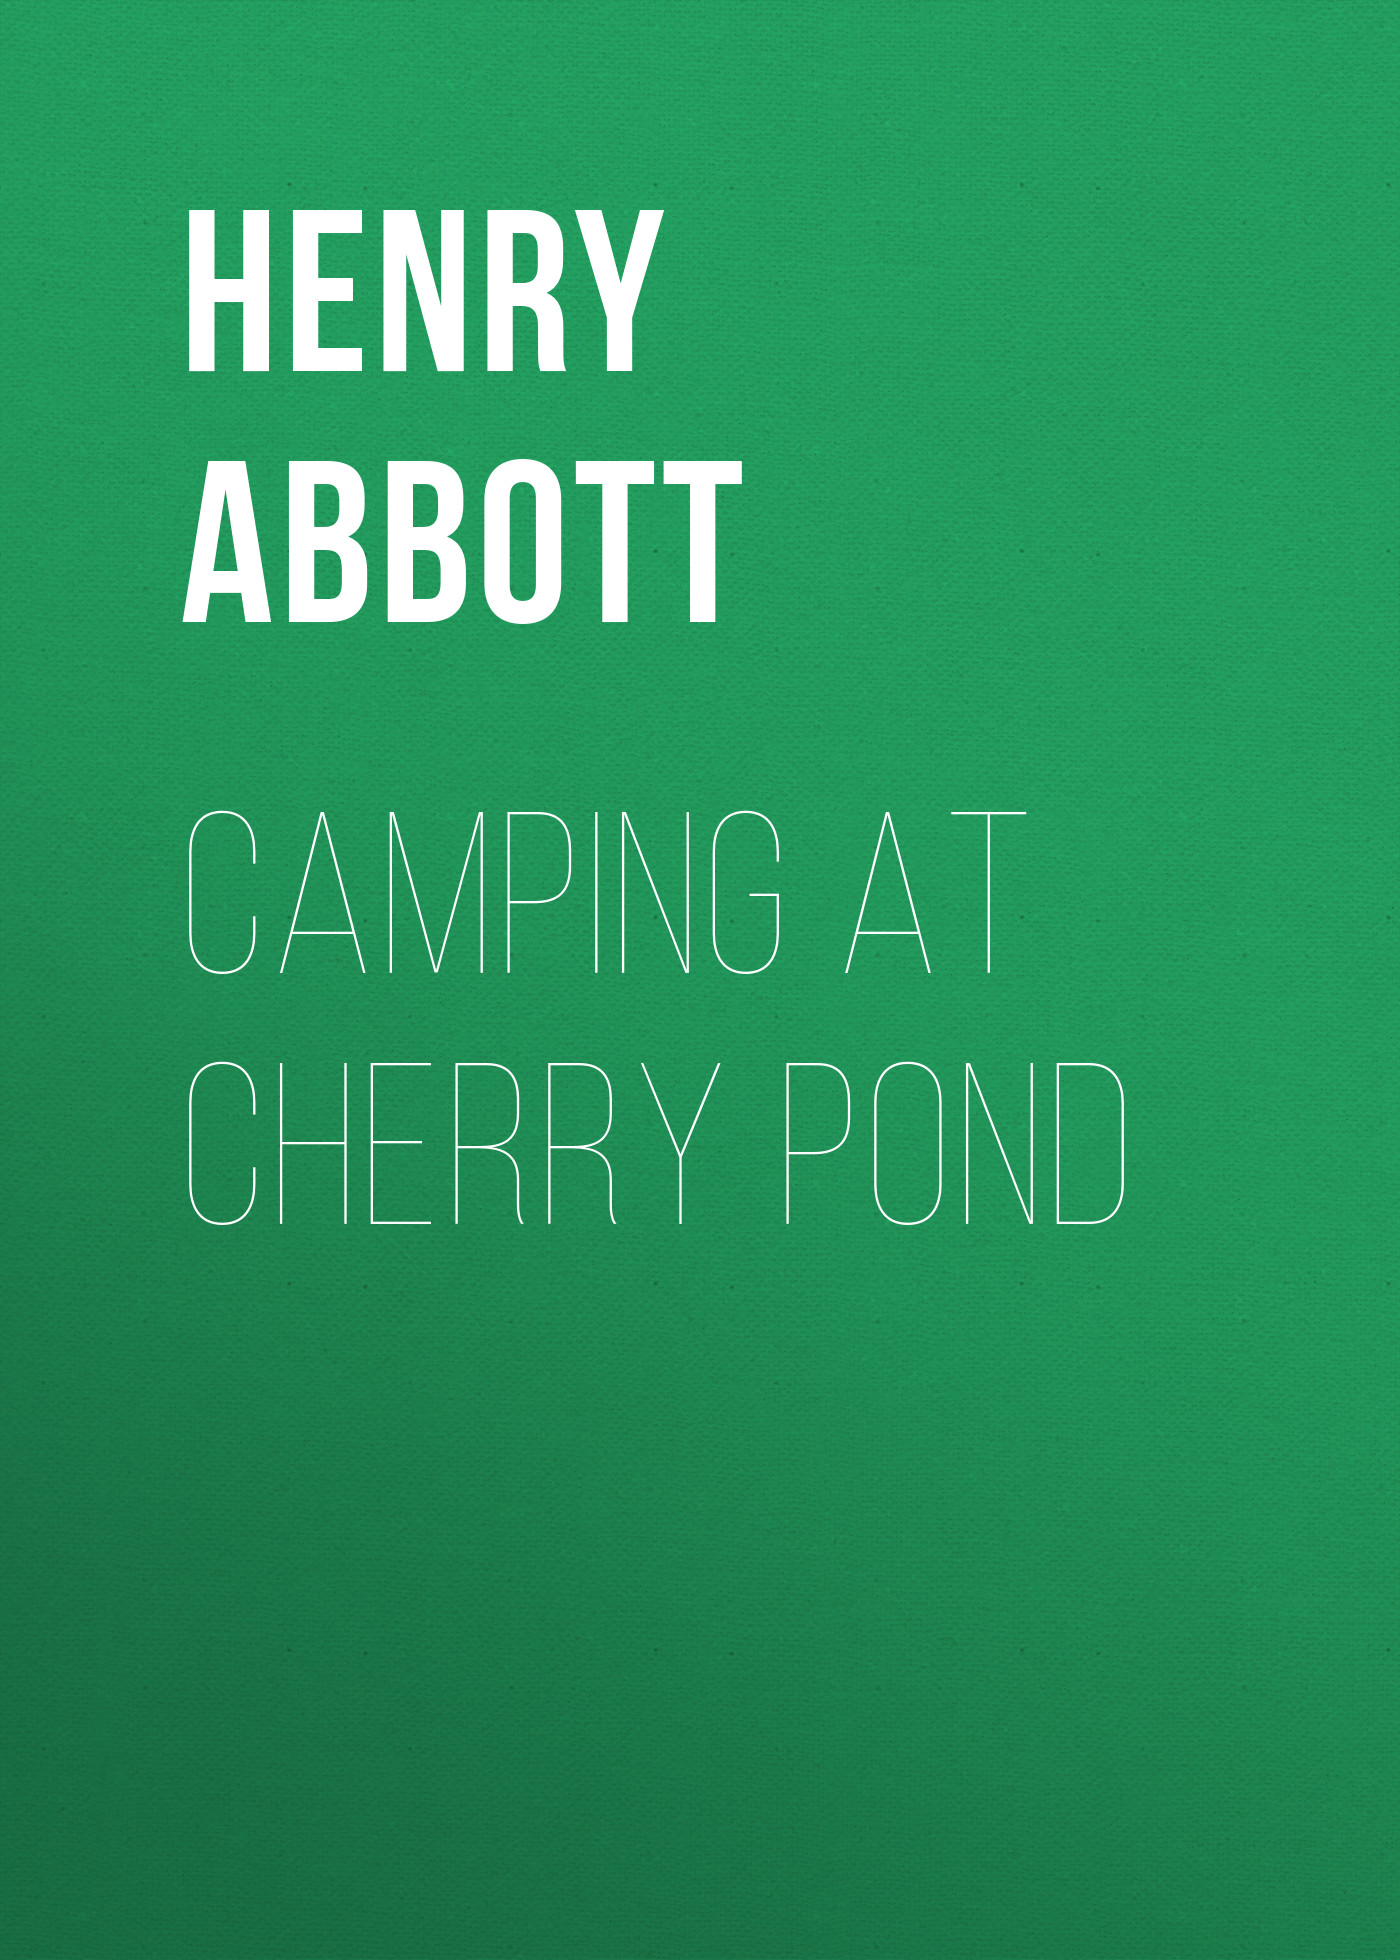 Книга Camping at Cherry Pond из серии , созданная Henry Abbott, может относится к жанру Зарубежная старинная литература, Зарубежная классика. Стоимость электронной книги Camping at Cherry Pond с идентификатором 24174780 составляет 5.99 руб.